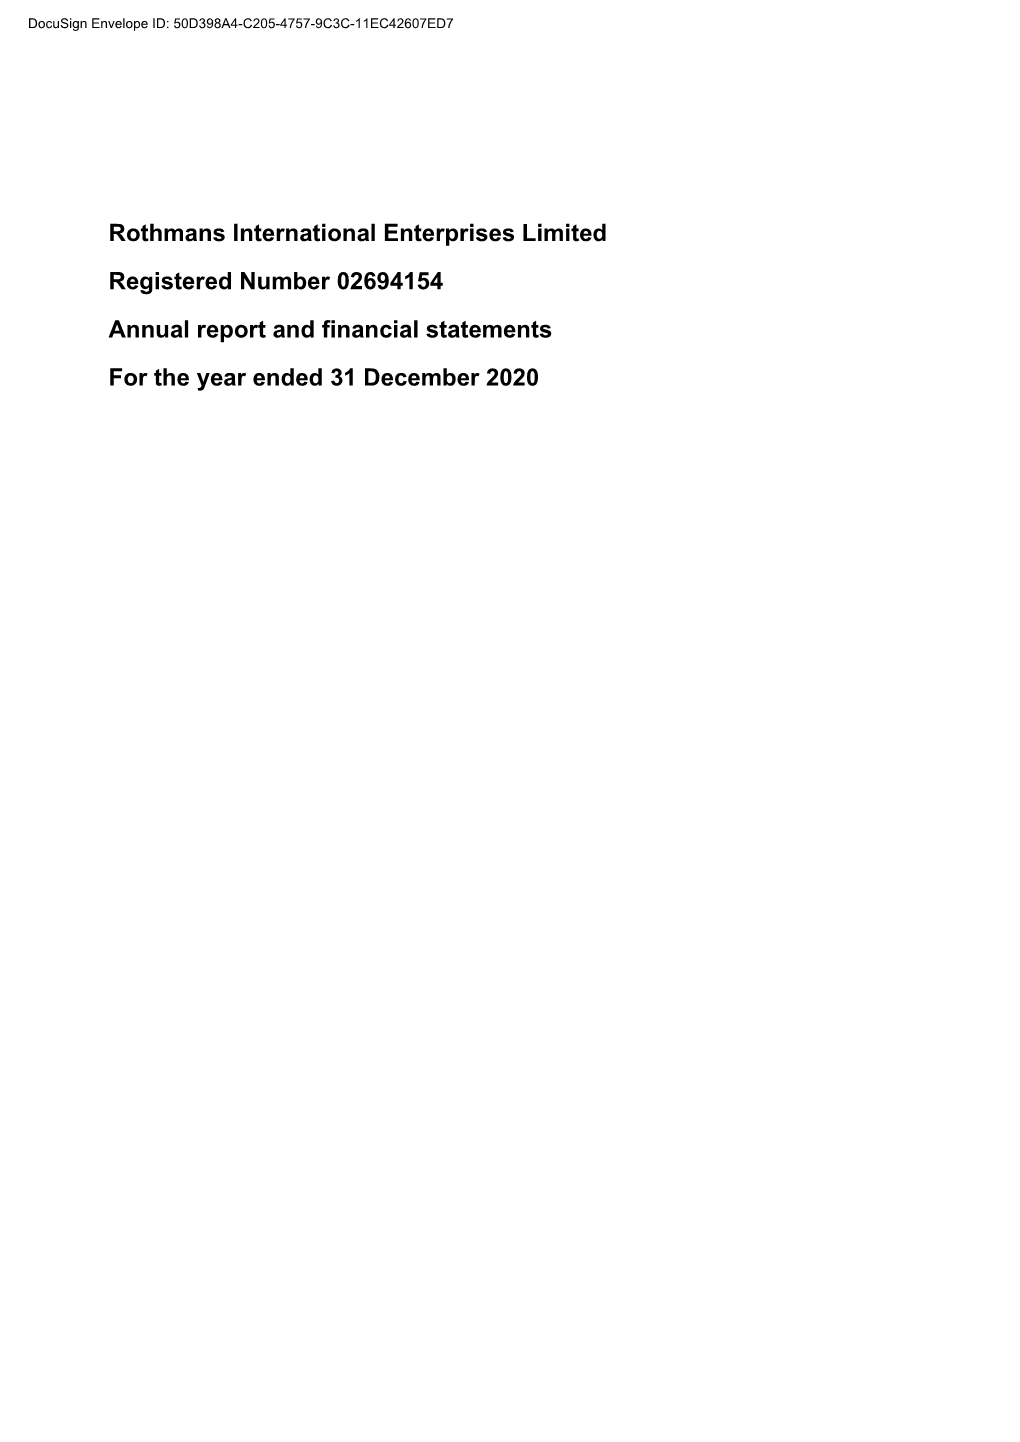 Rothmans International Enterprises Limited Registered Number